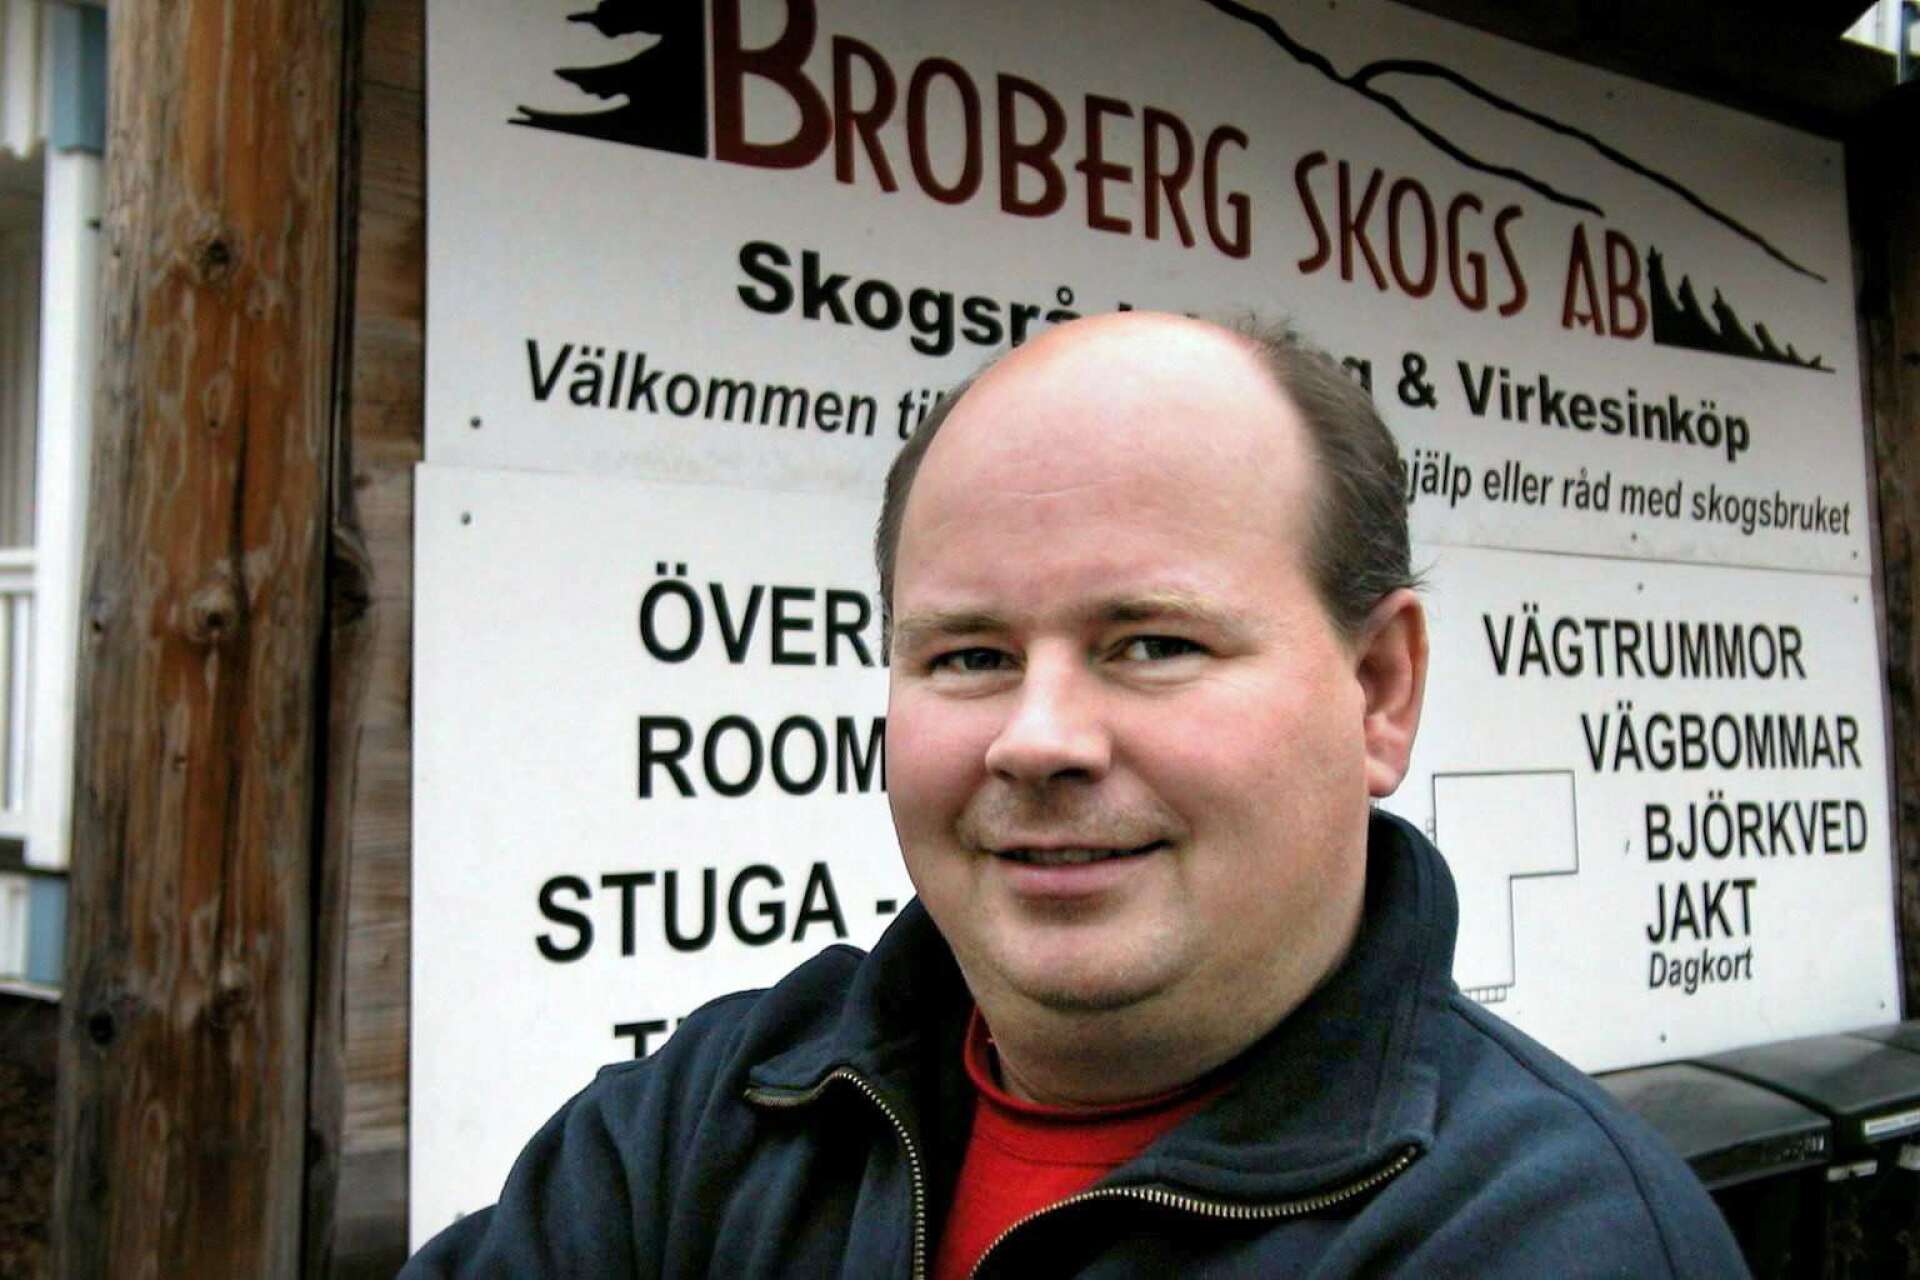 Mats Broberg (DO!T).